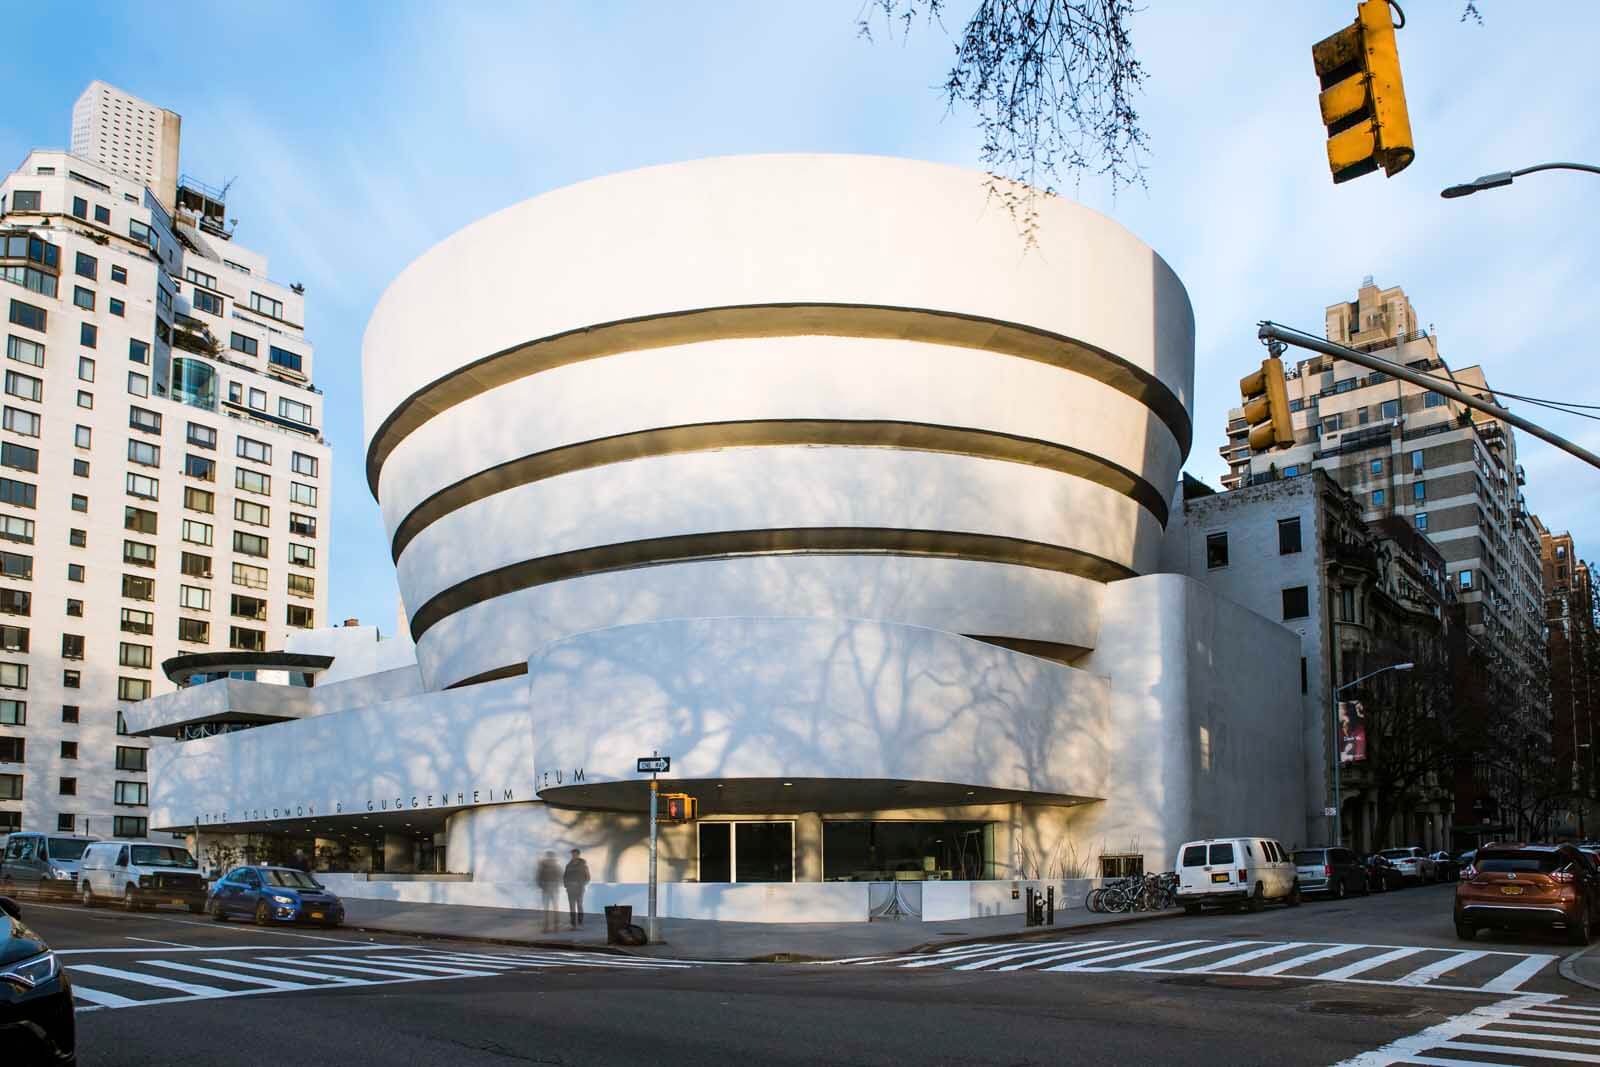 Guggenheim Museum in Manhattan NYC